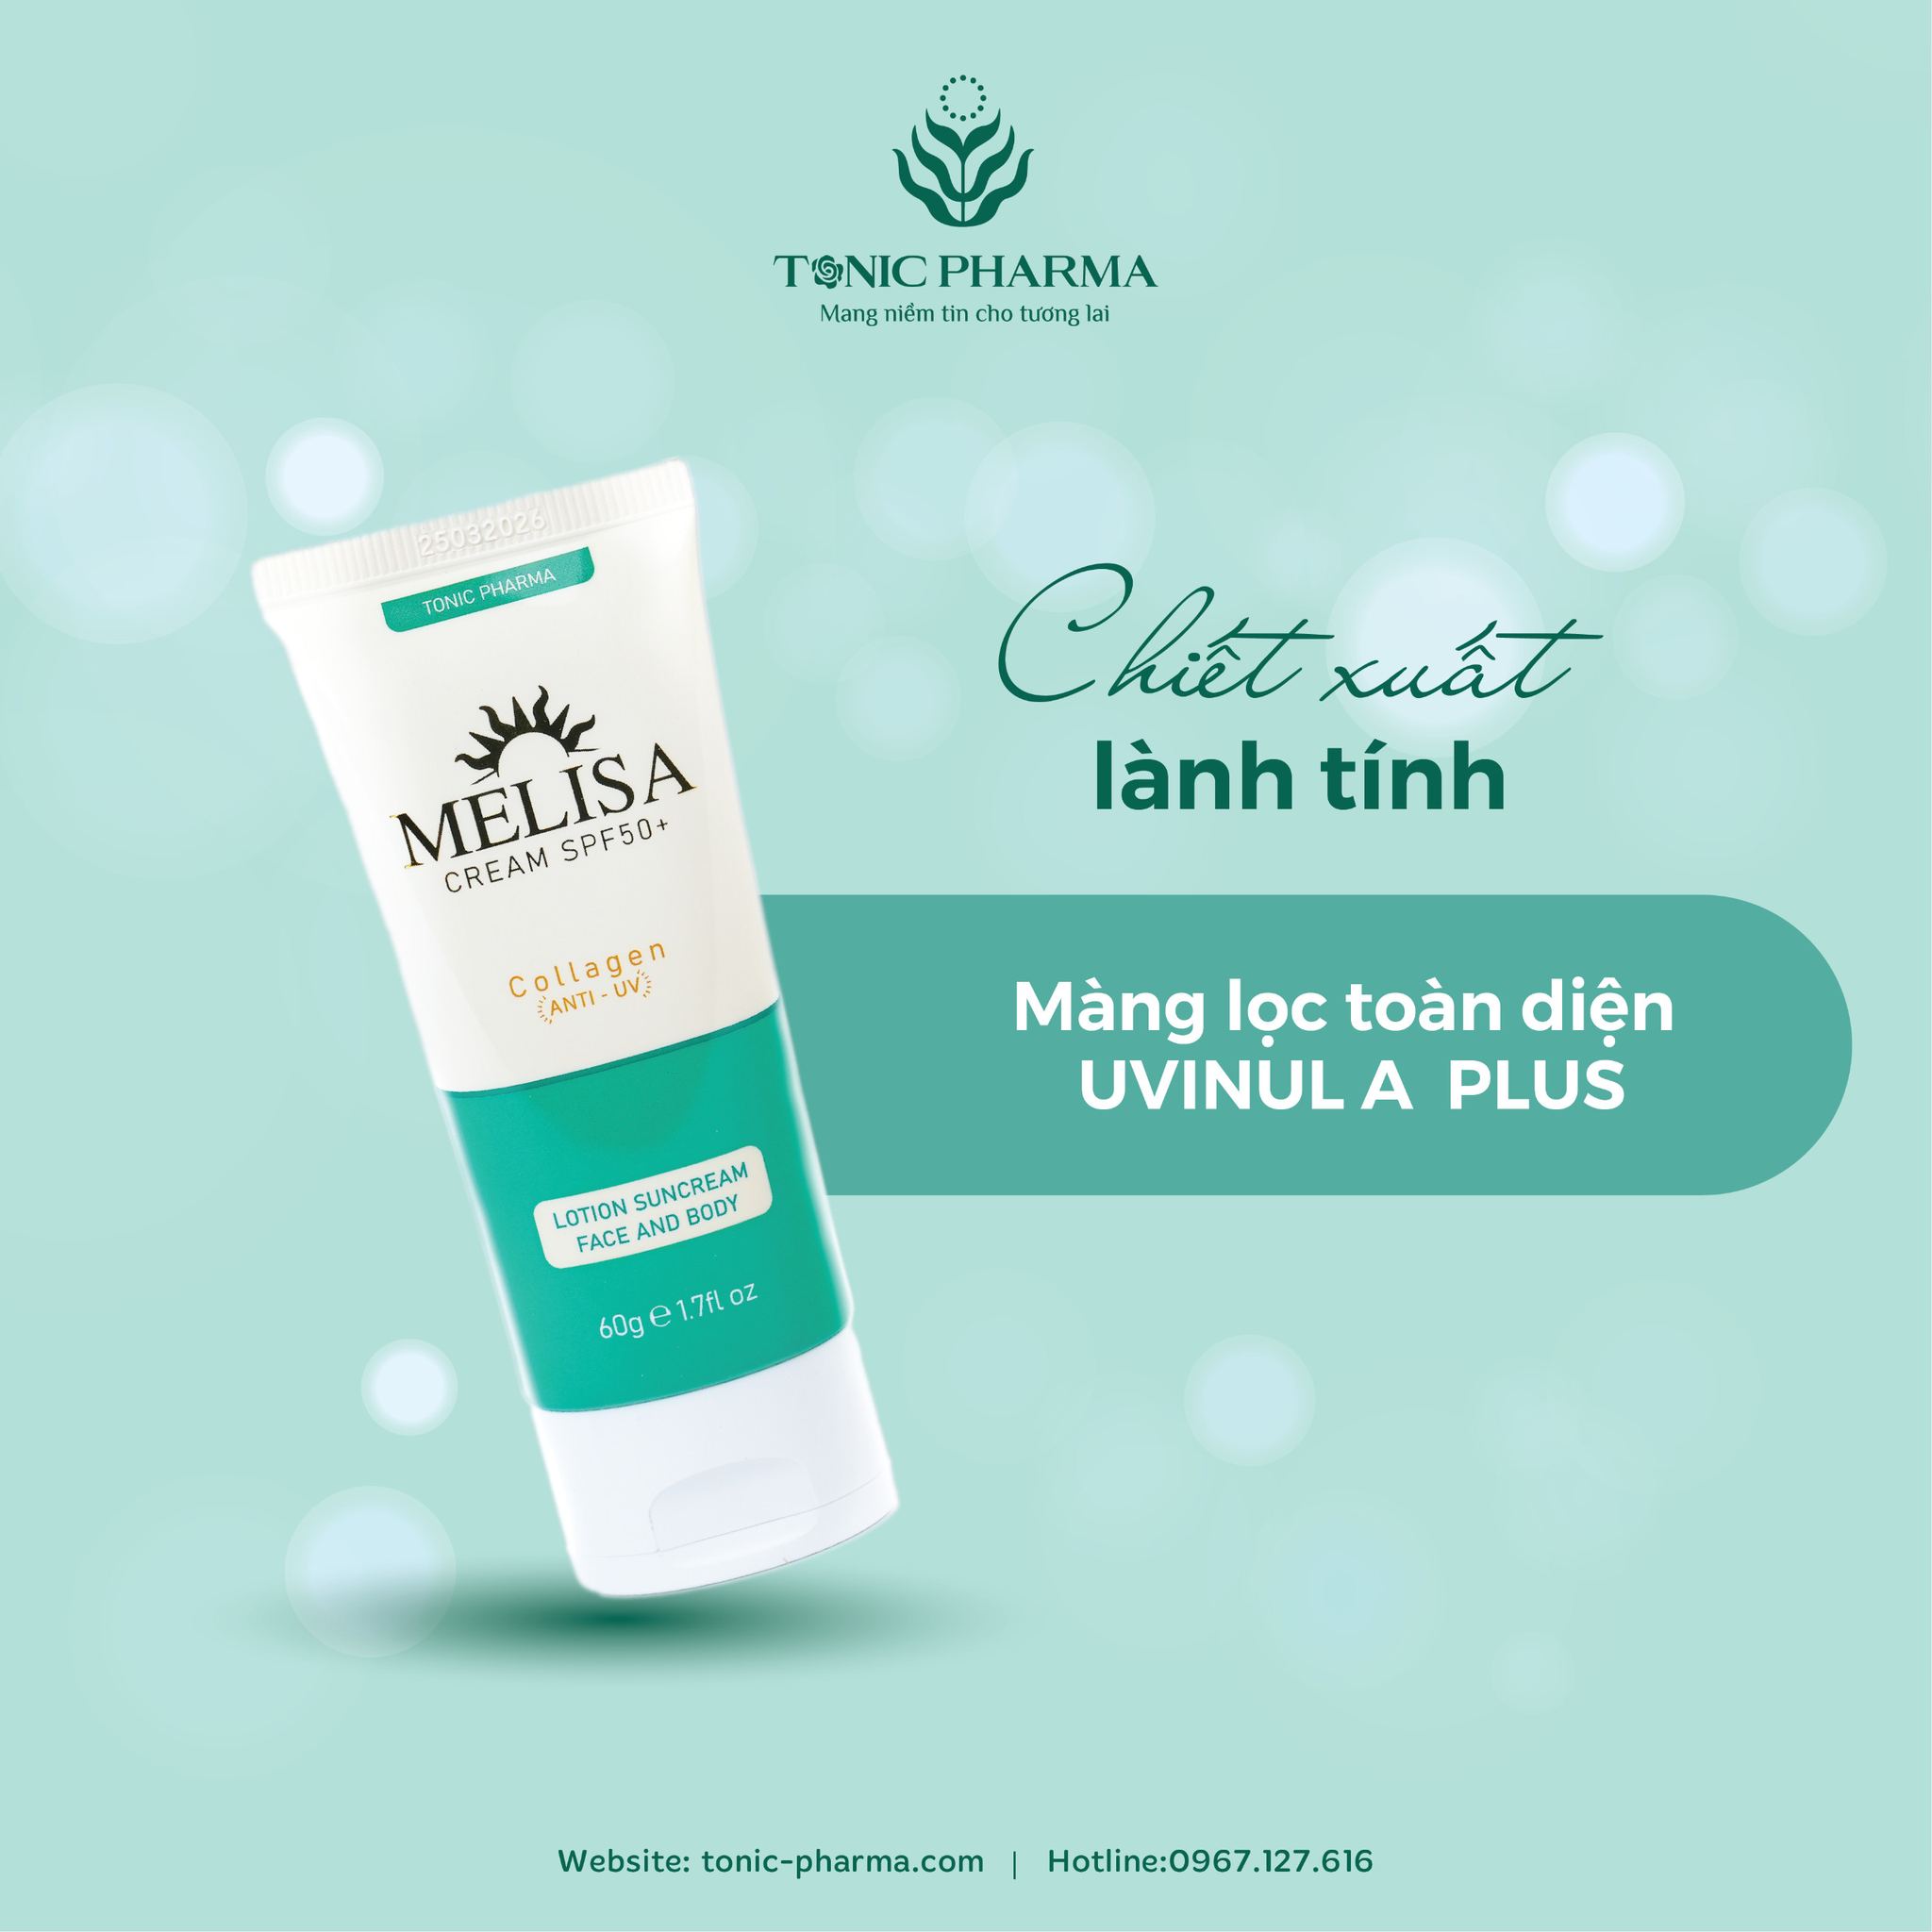 Kem chống nắng MELISA  Cream SPF 50+ Collagen PA++++ -  Tonic Pharma  -  Không Bết Dính Không Bóng Dầu - 60ml